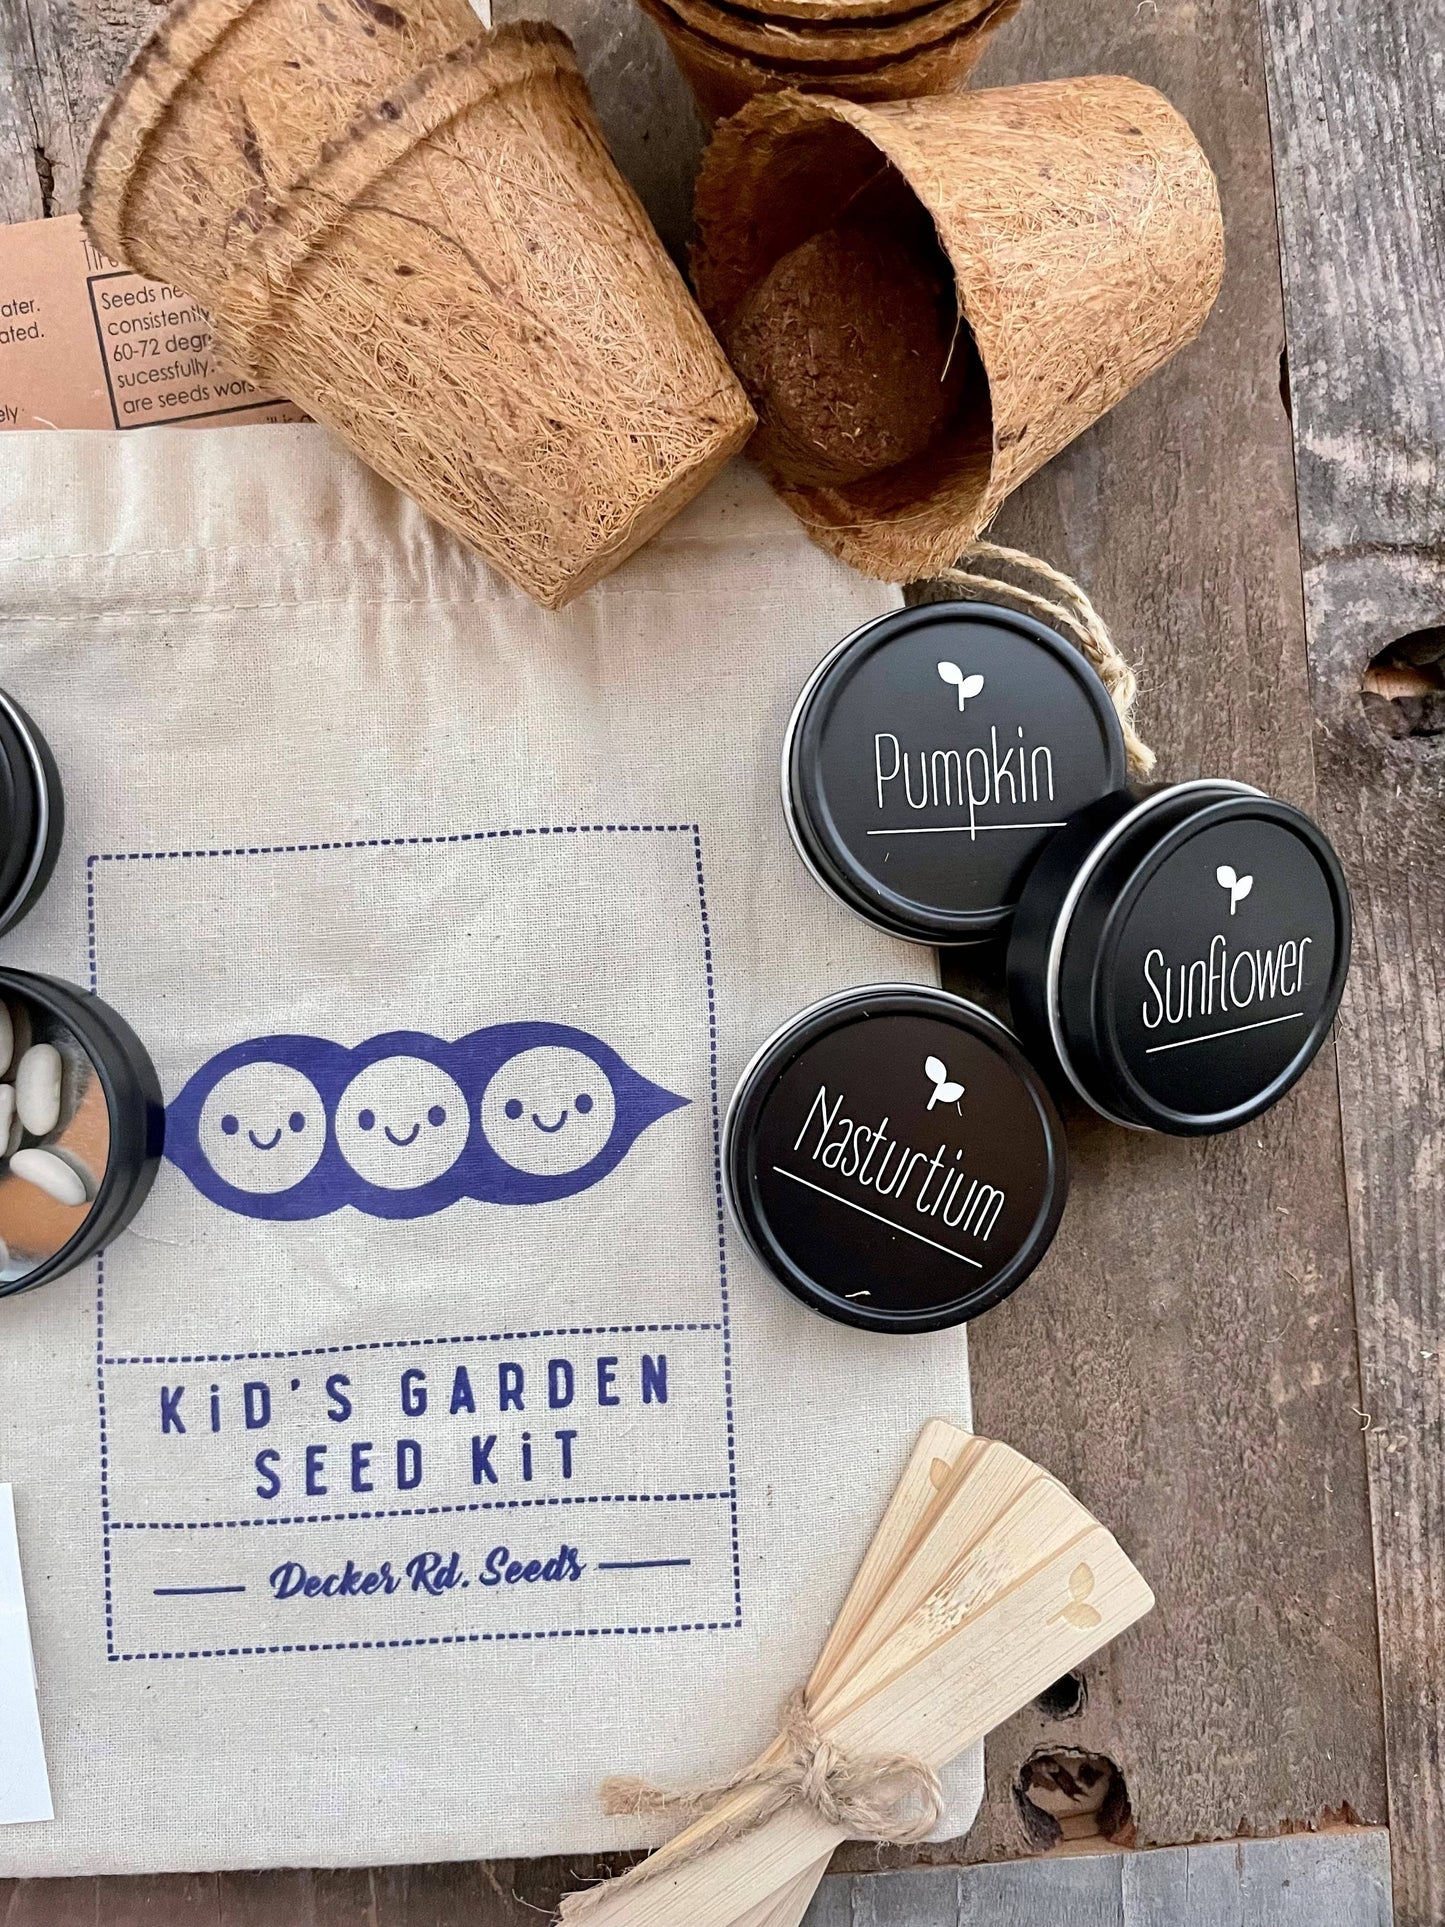 Decker Rd. Seeds - Kid's Garden Seed Kit